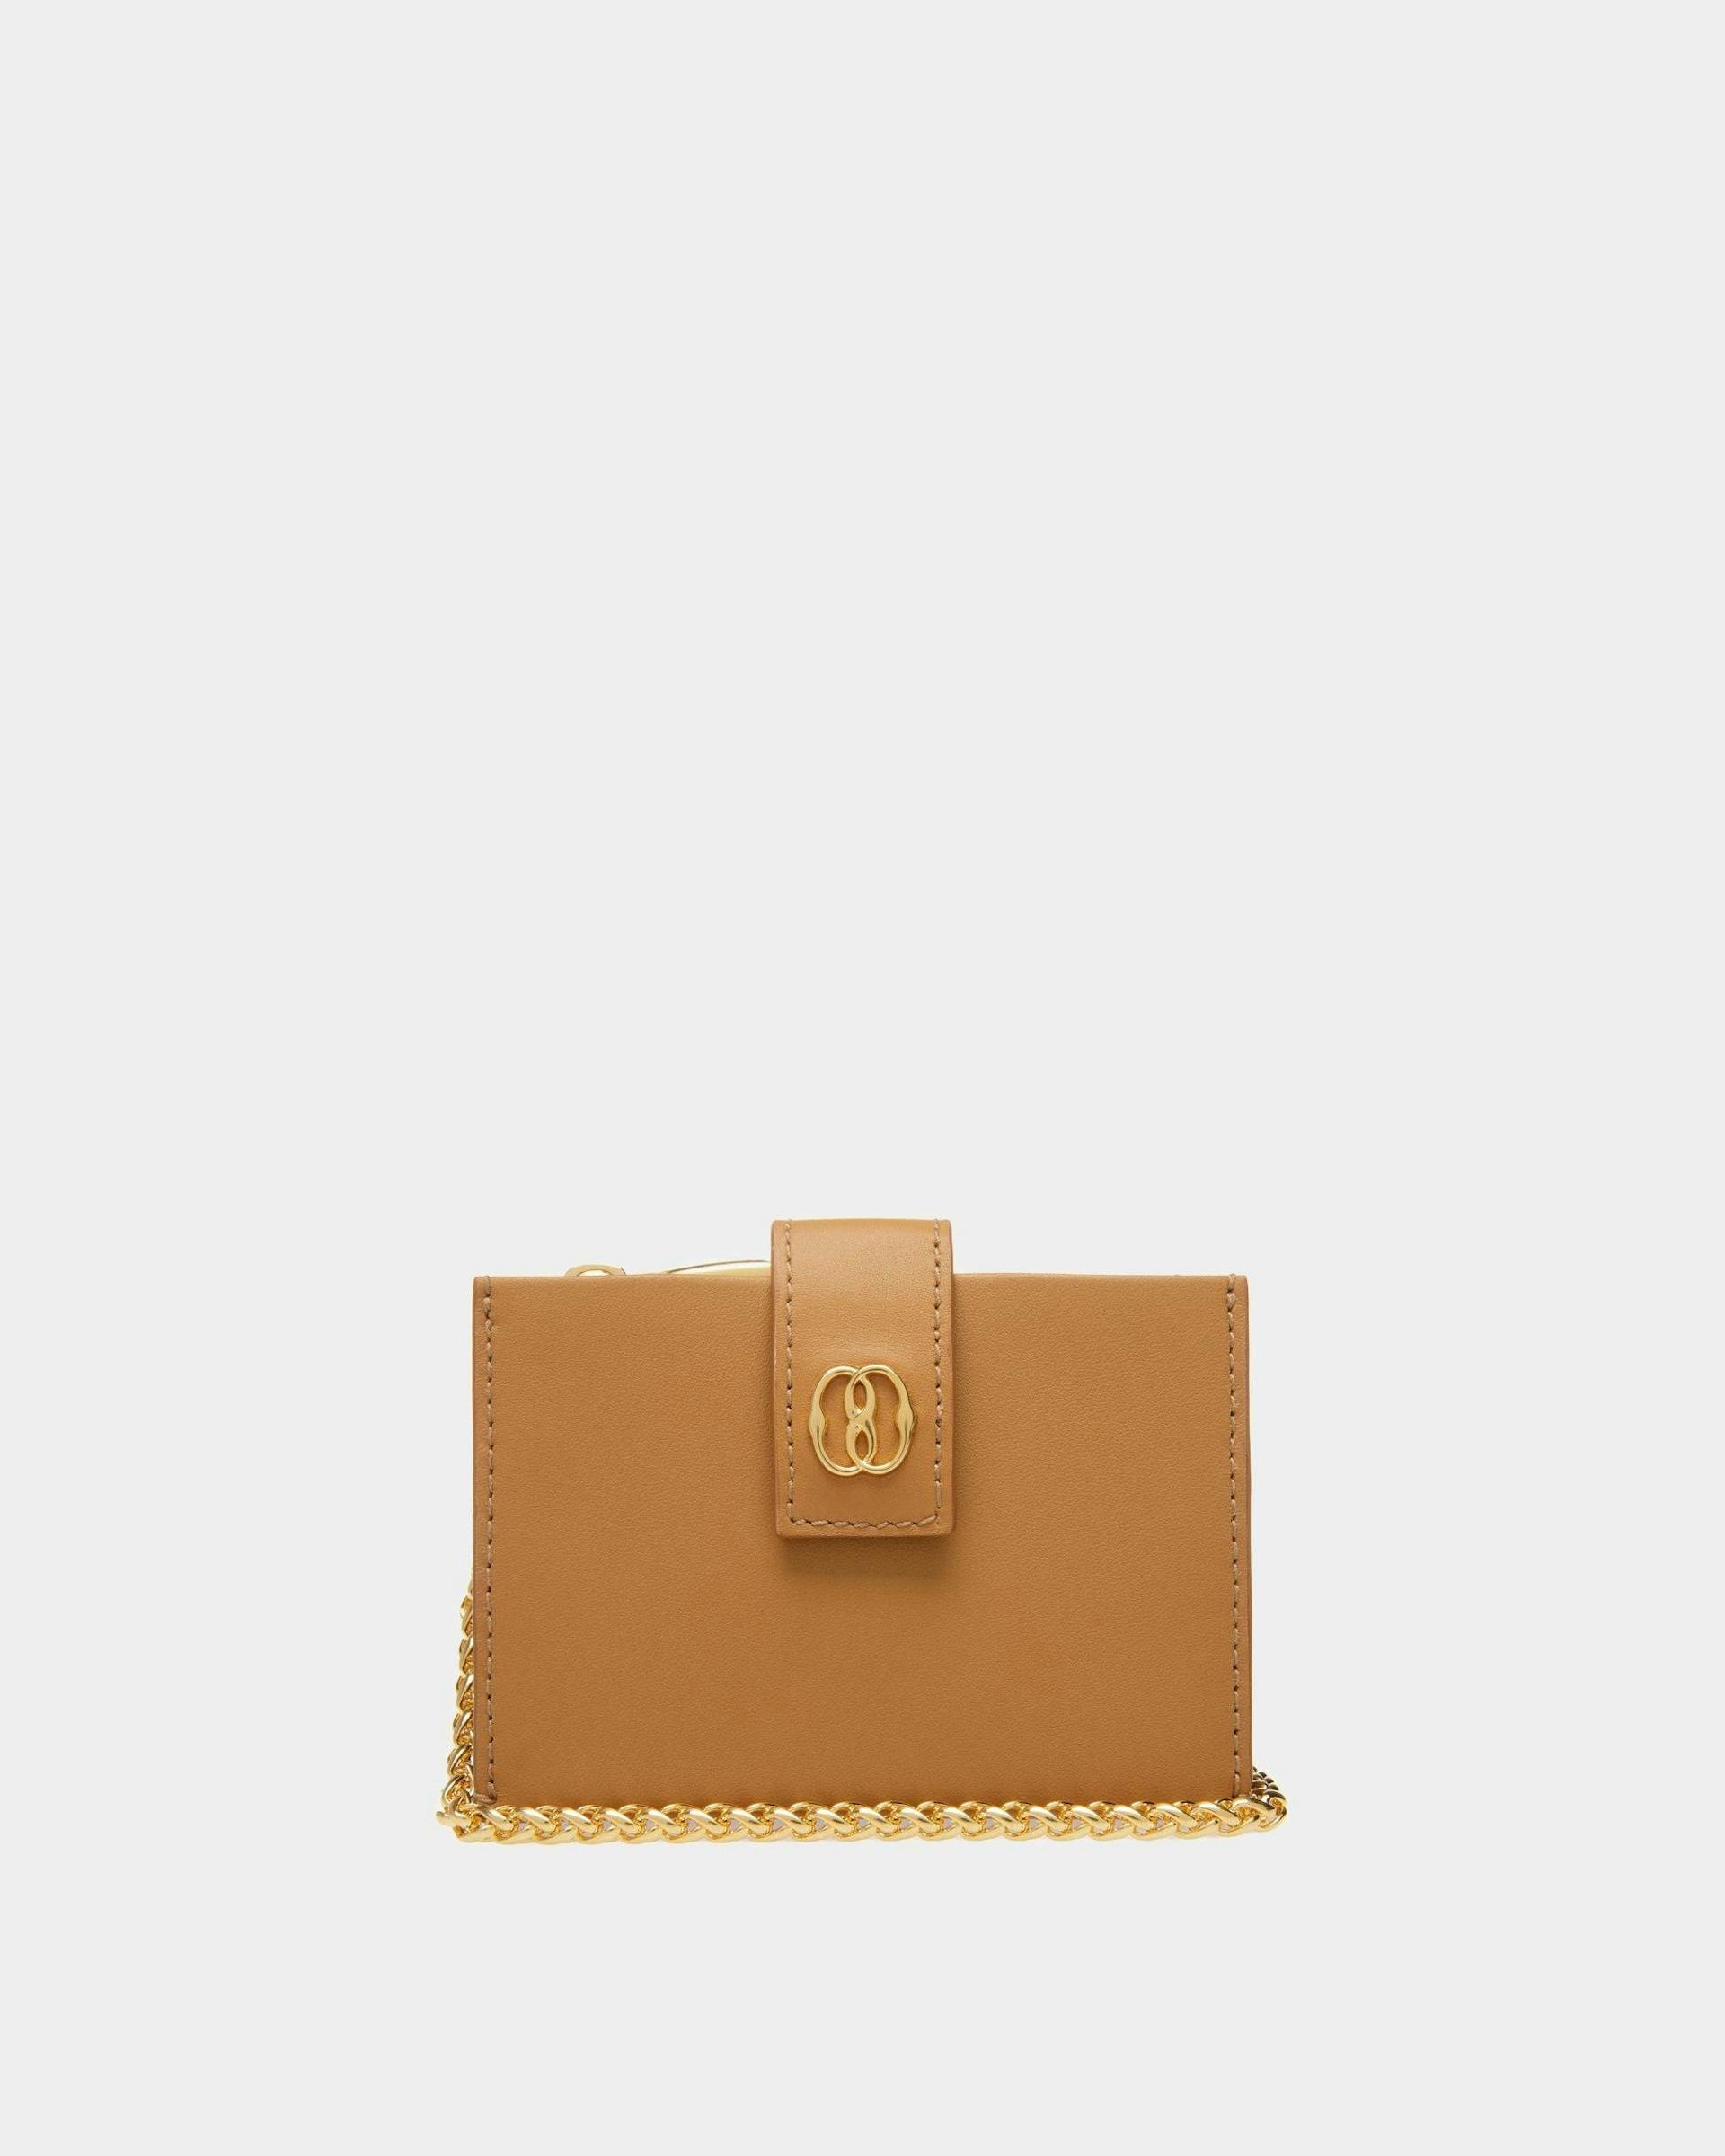 Women's Emblem Card Holder In Desert Leather | Bally | Still Life Front